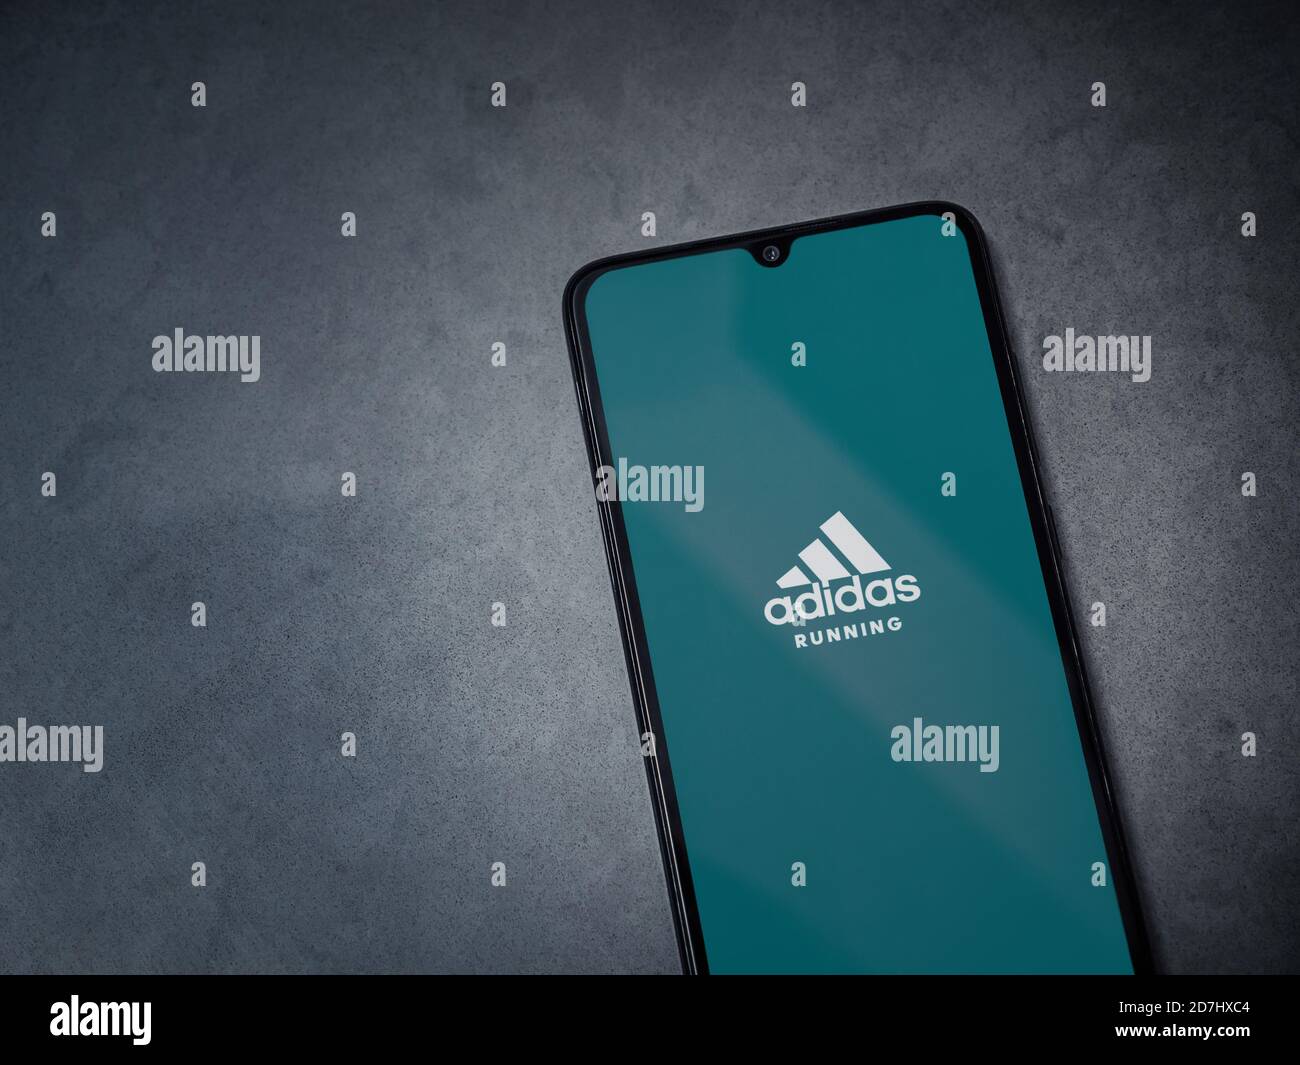 LOD, Israel - 8 de julio de 2020: Adidas ejecutando la pantalla de  lanzamiento de la aplicación con el logotipo en la pantalla de un teléfono  inteligente móvil negro sobre fondo de